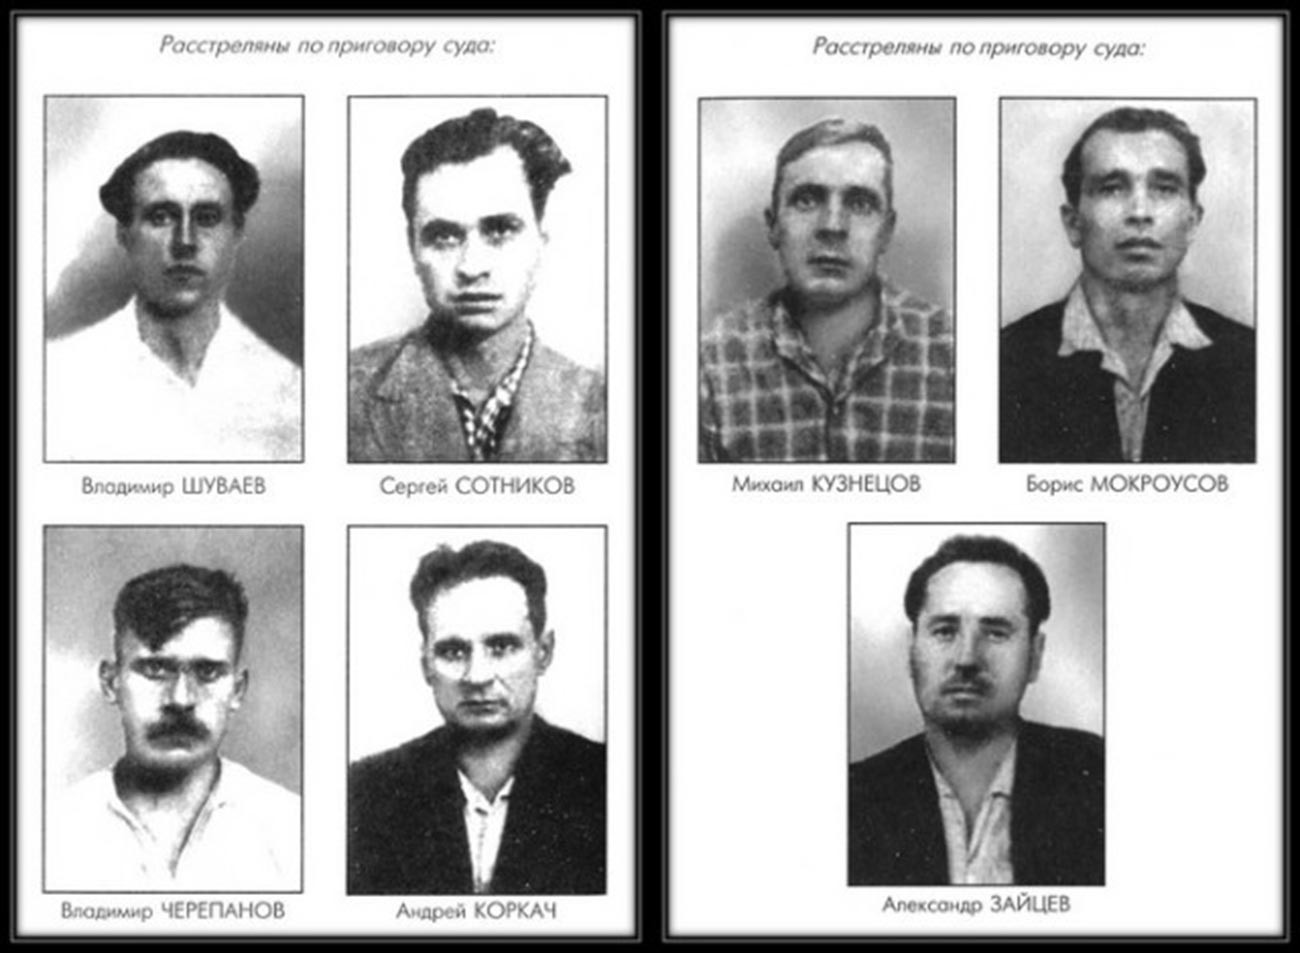 The seven workers of the NEBF condemned to execution by shooting: Vladimir Shuvaev (1937-1962), Sergey Sotnikov (1937-1962), Mikhail Kuznetsov (1930-1962), Boris Mokrousov (1923-1962), Vladimir Cherepanov (1933-1962), Andrey Korkach (1917-1962), Alexander Zaytsev (1927-1962).